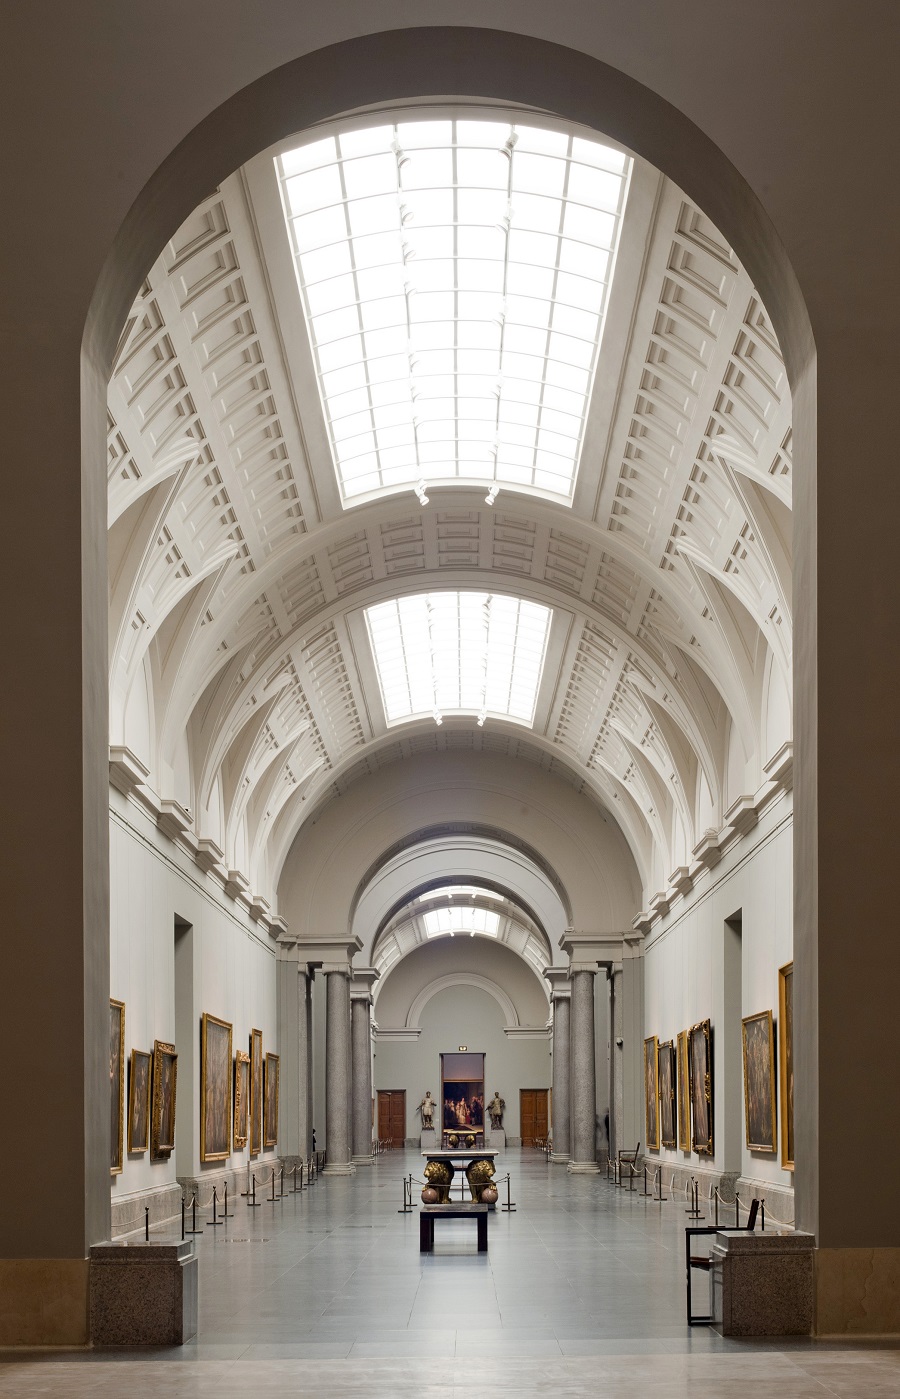 Galería Central ©Museo Nacional del Prado.